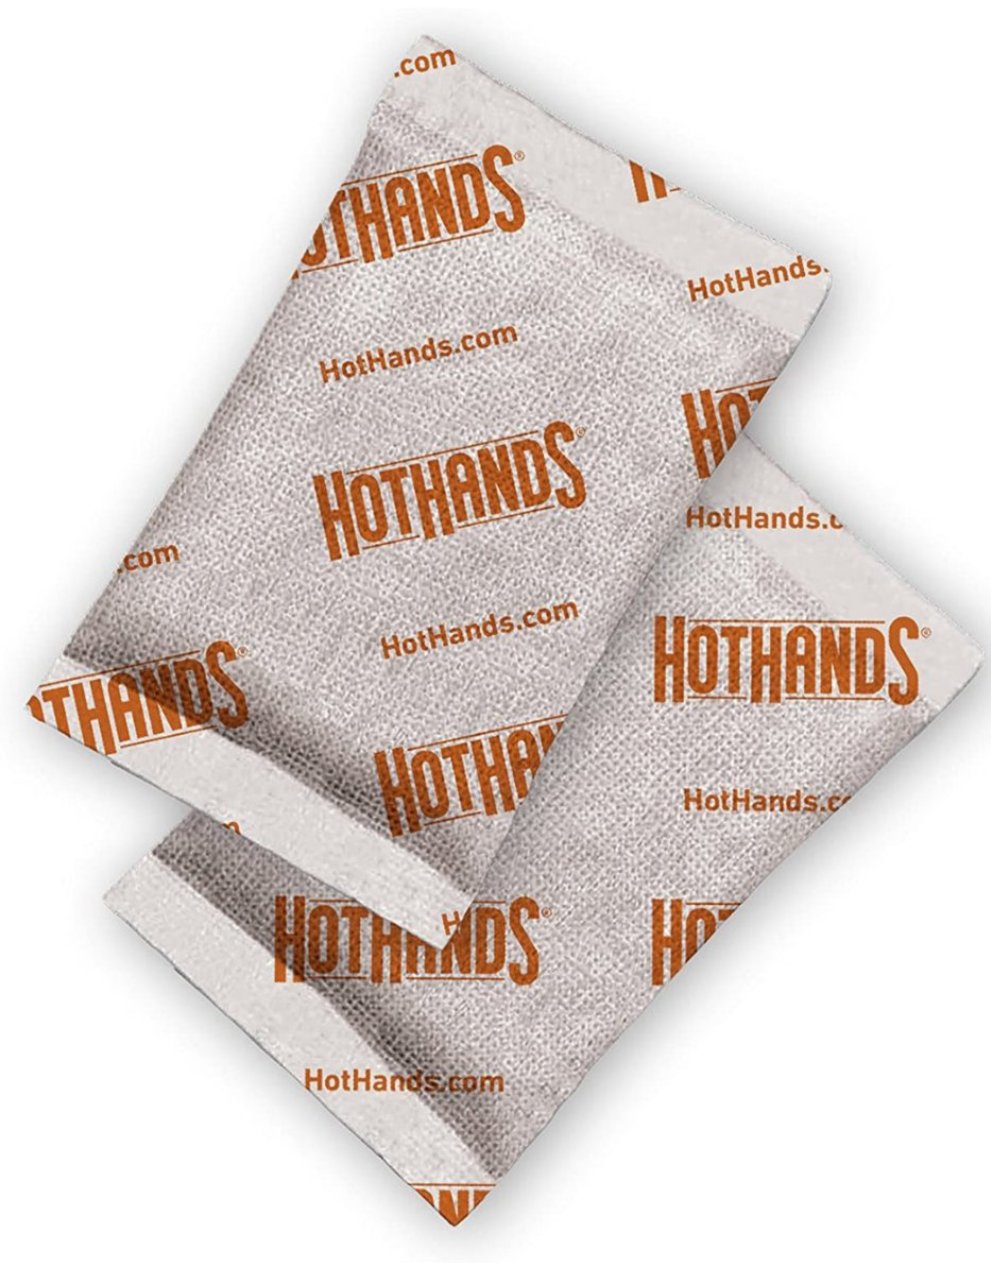 Calentadores Hothands - Nuevos